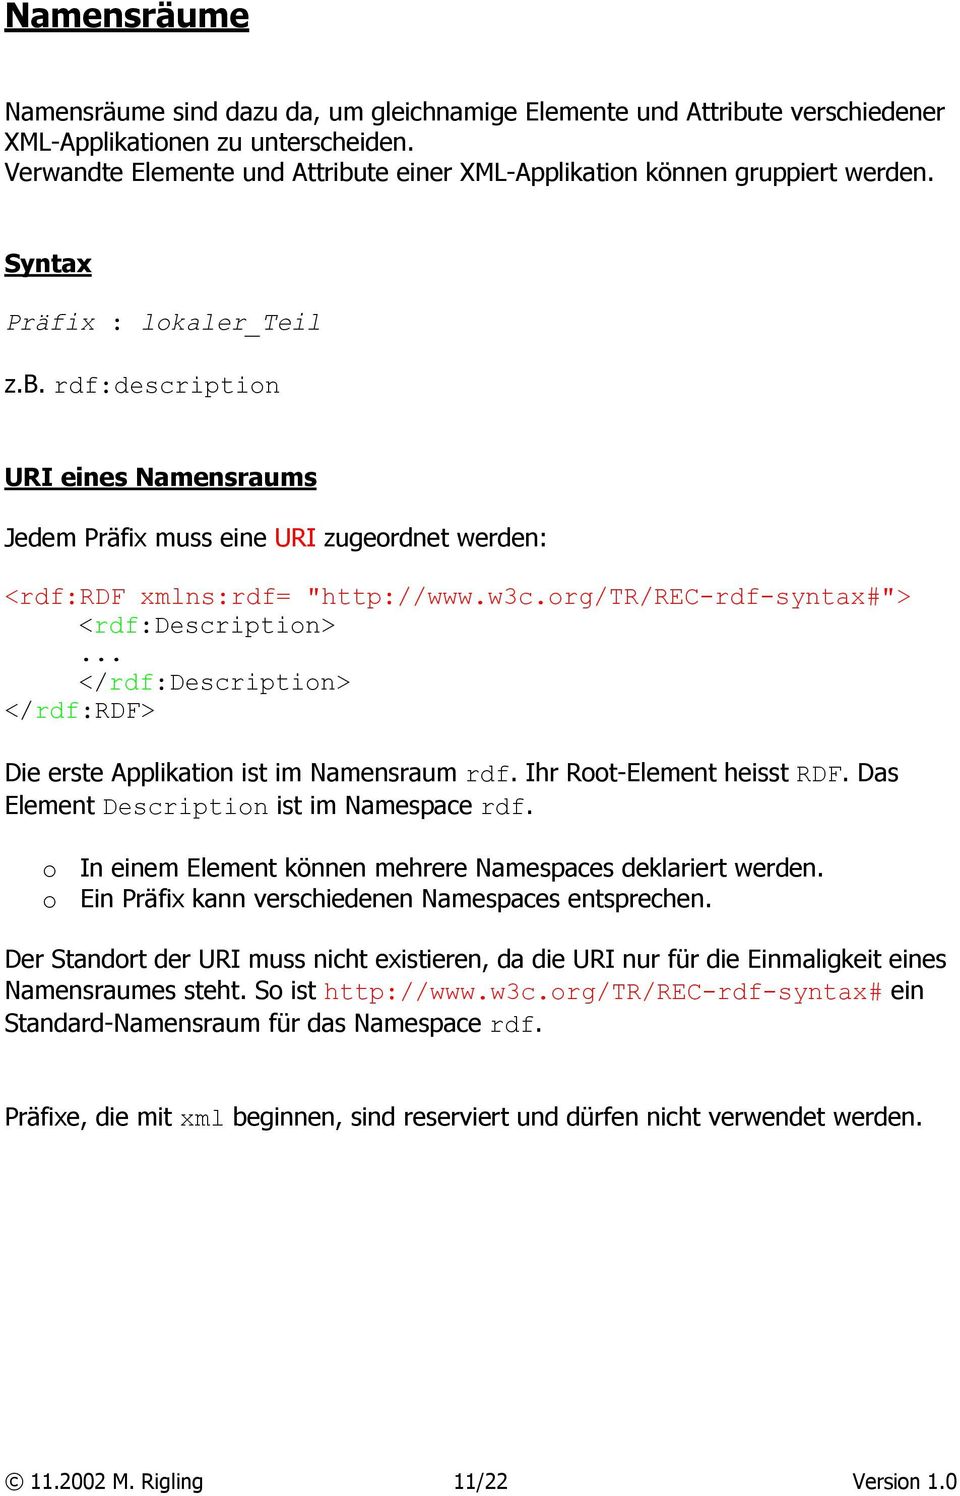 w3c.org/tr/rec-rdf-syntax#"> <rdf:description>... </rdf:description> </rdf:rdf> Die erste Applikation ist im Namensraum rdf. Ihr Root-Element heisst RDF. Das Element Description ist im Namespace rdf.